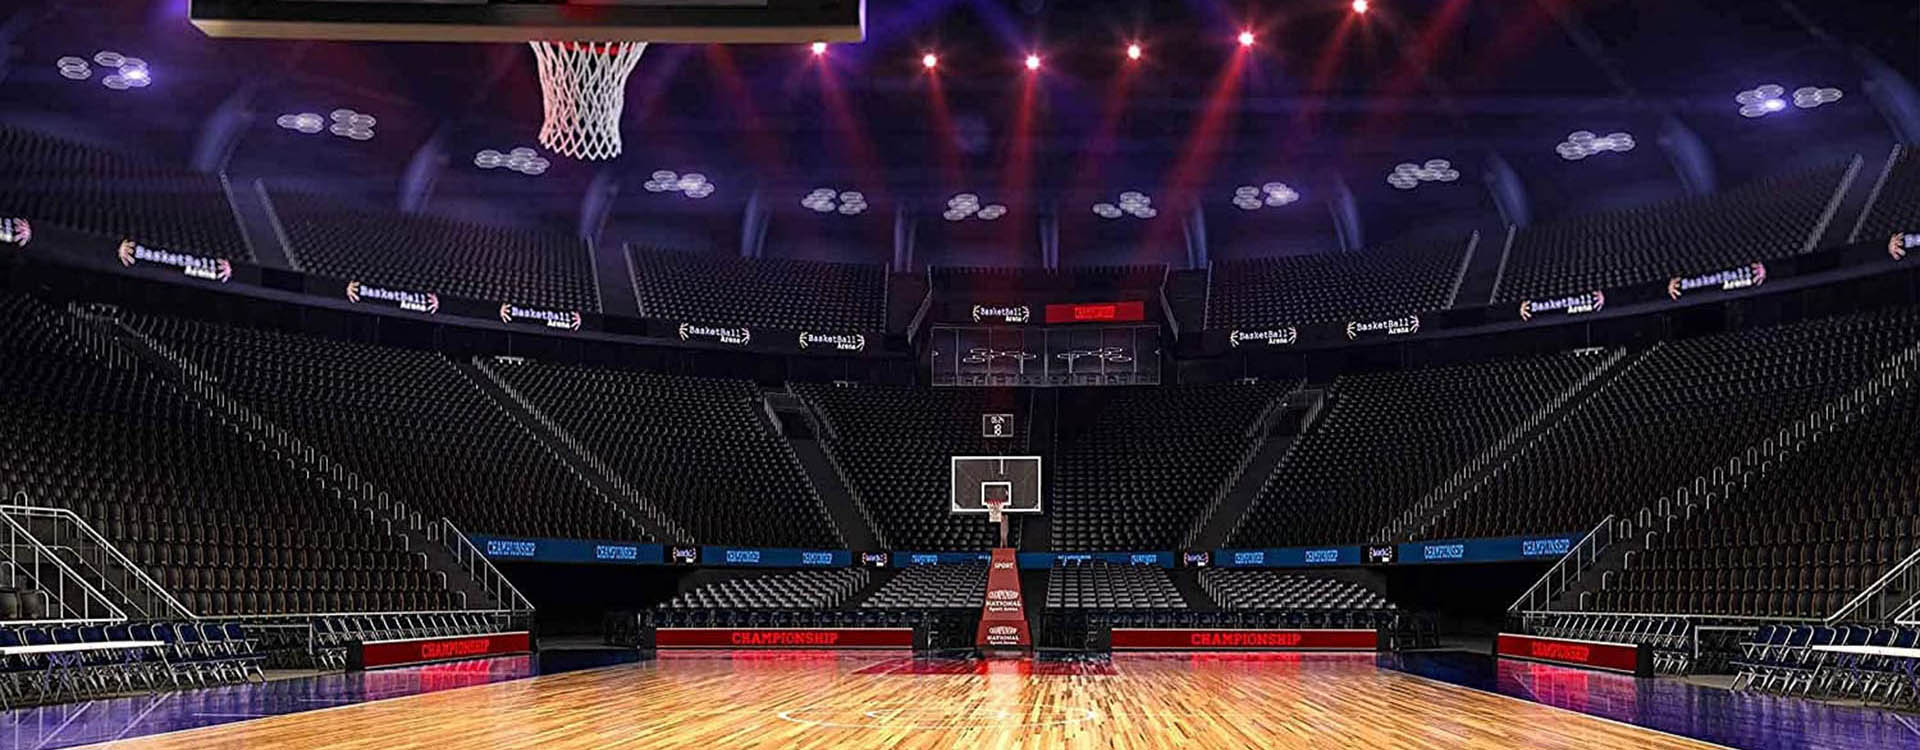 basketbalové ihrisko-led-osvetlenie-1